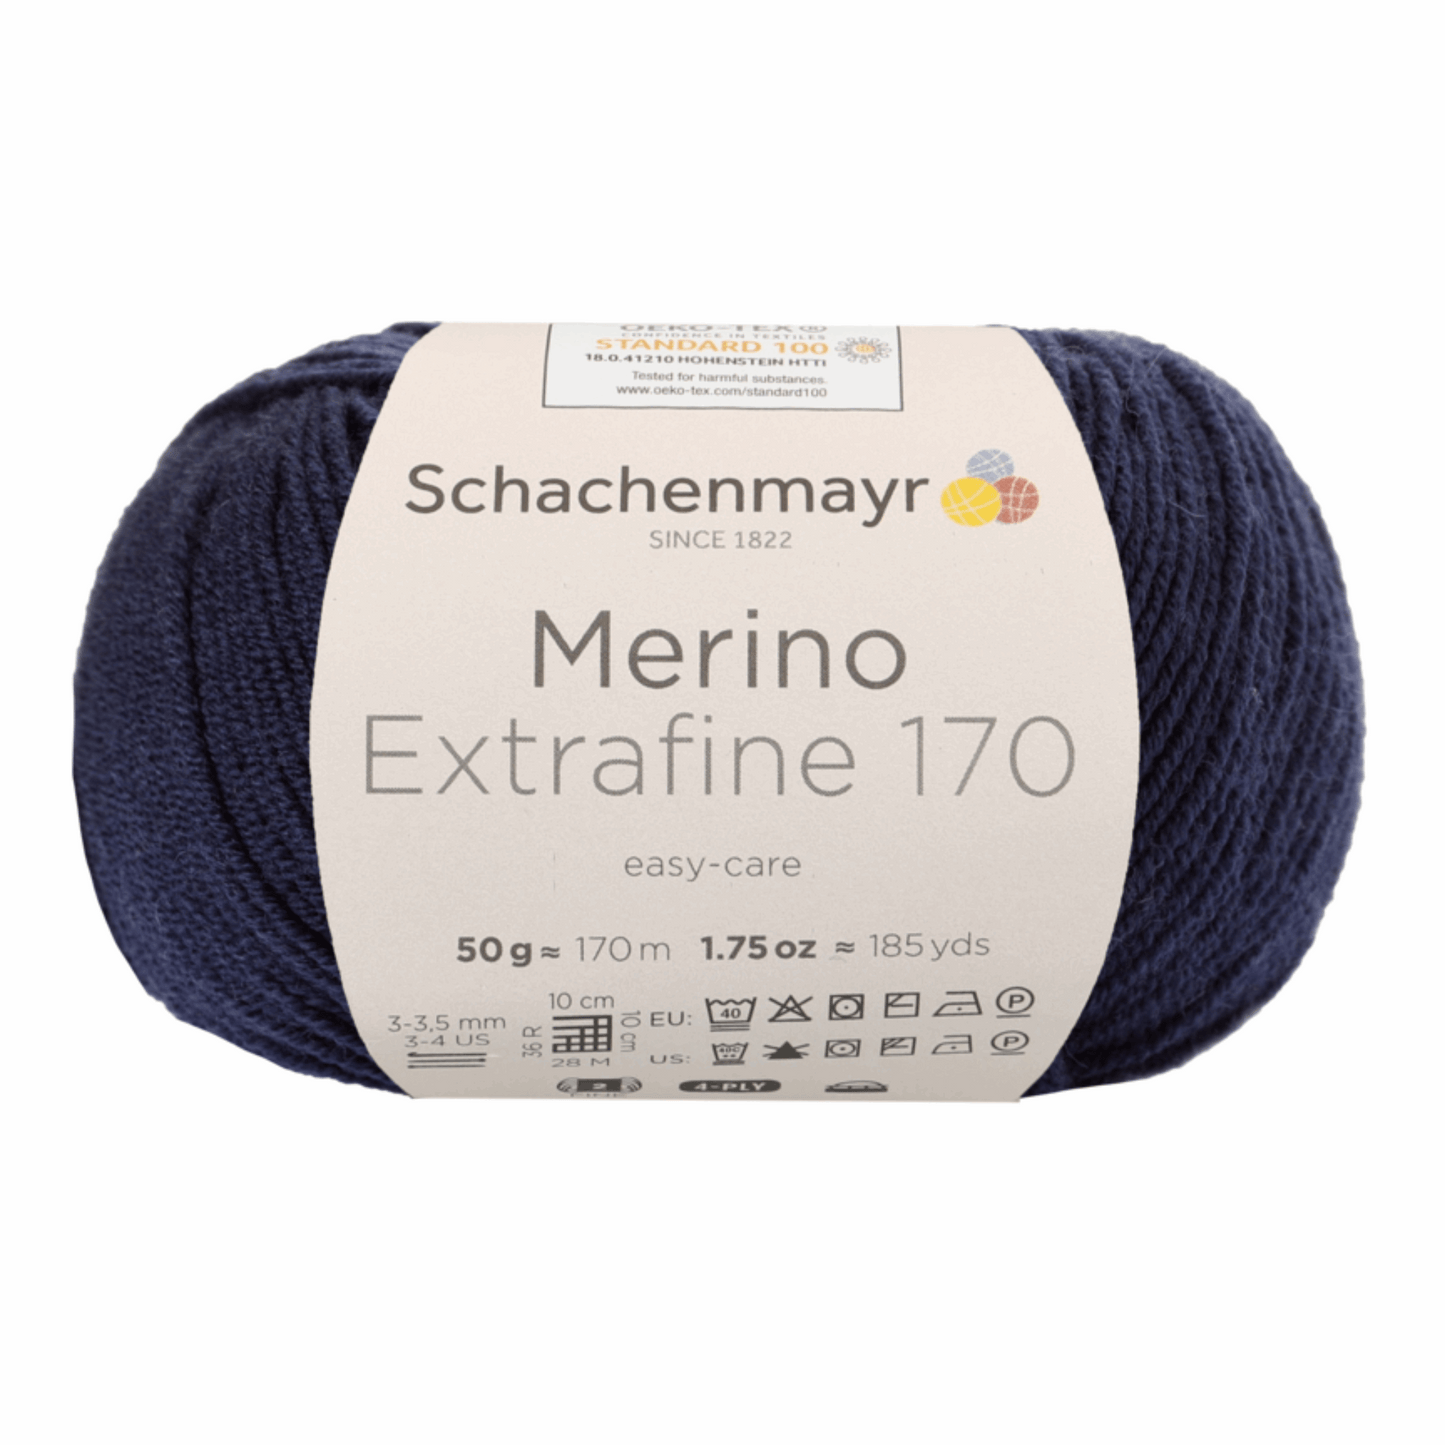 Schachenmayr Merino Extrafine 170 50g, 90551, Farbe Marine 50